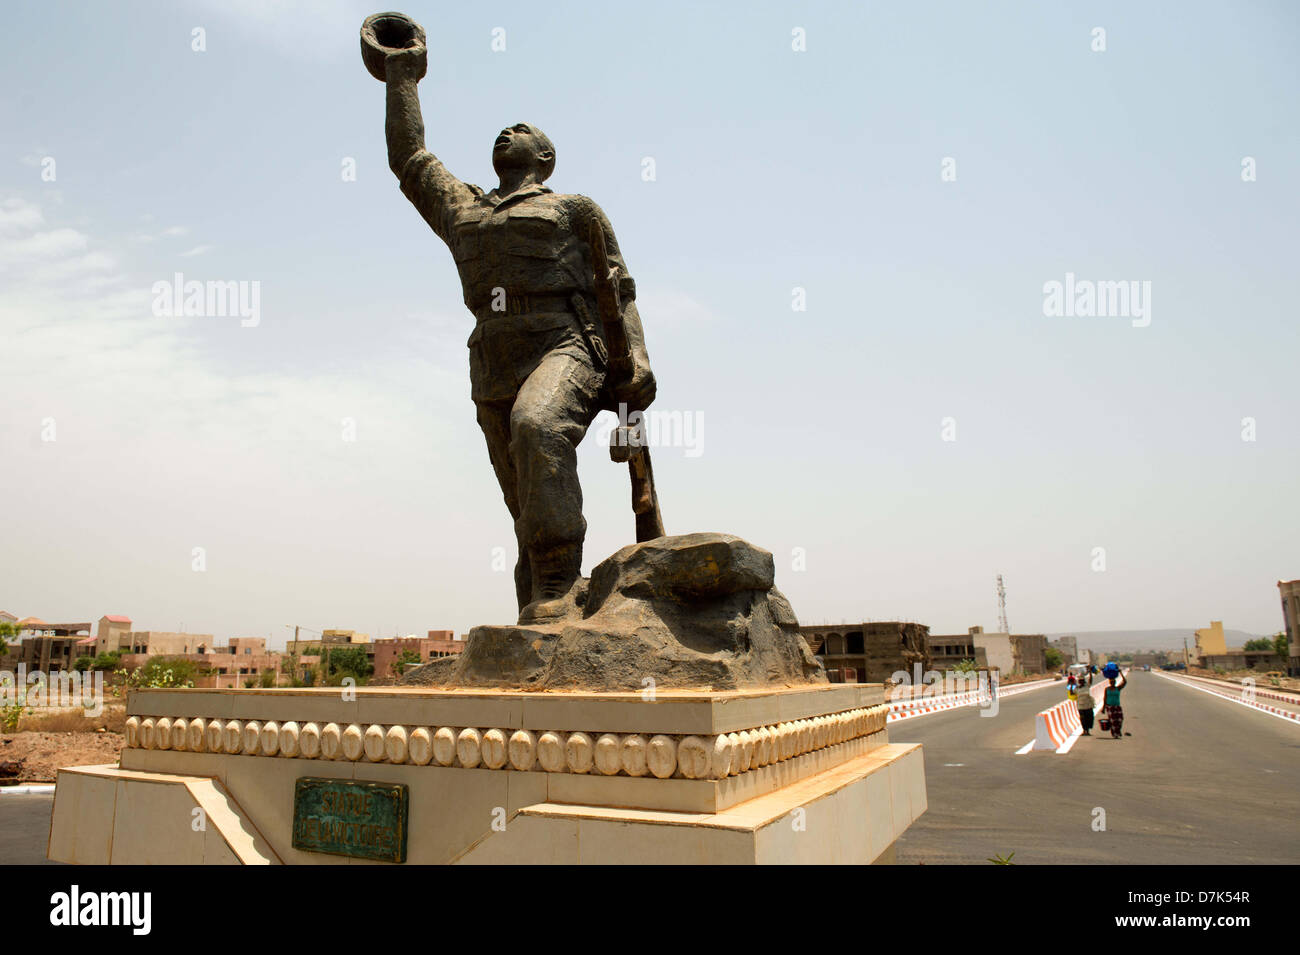 Due donne a piedi passato il monumento della vittoria dell'esercito maliano a Bamako capitale del Mali, 08 maggio 2013. Dopo un colpo di stato militare nel 2012, le elezioni democratiche sono programmate per il mese di luglio 2013 in Mali. Foto: Maurizio Gambarini Foto Stock